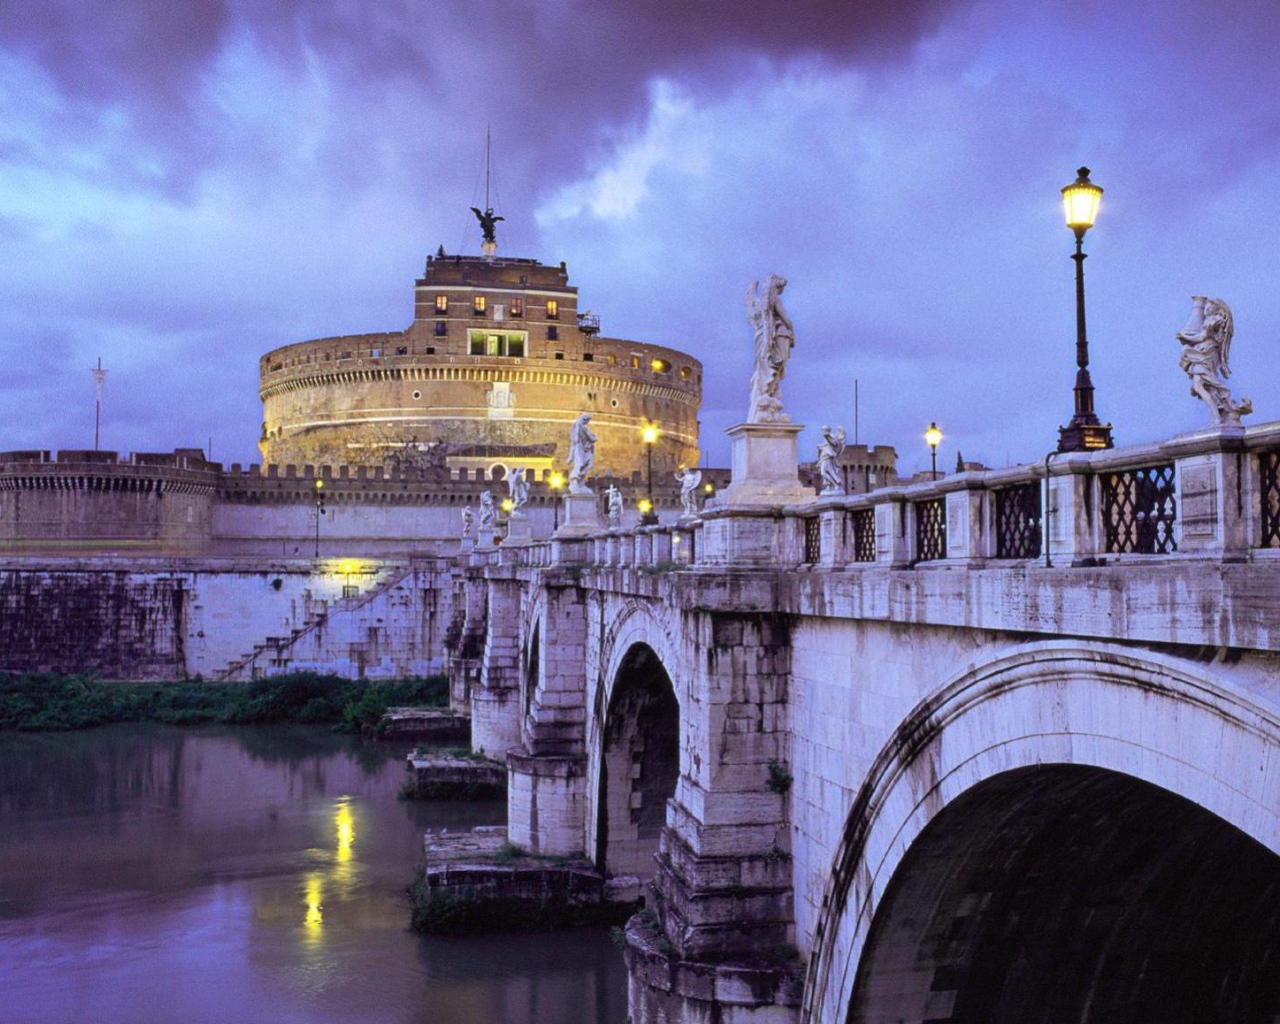 Мост через реку в Риме, Италия